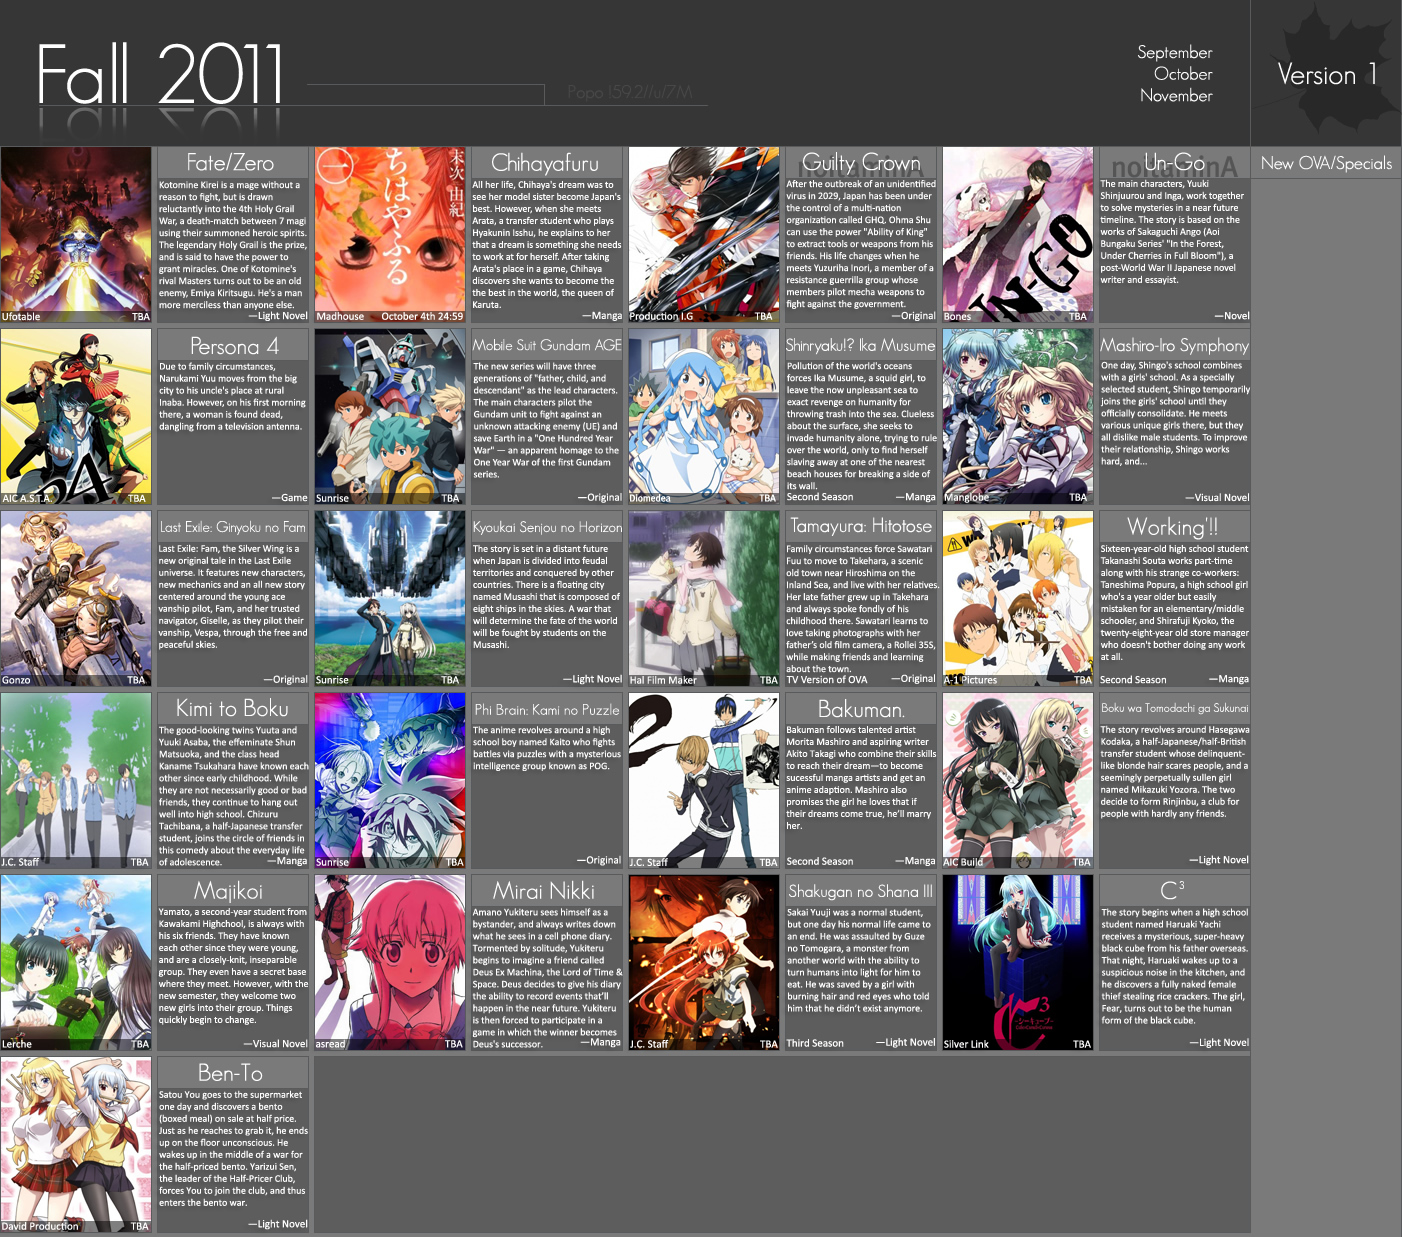 Anime 2011 Fall